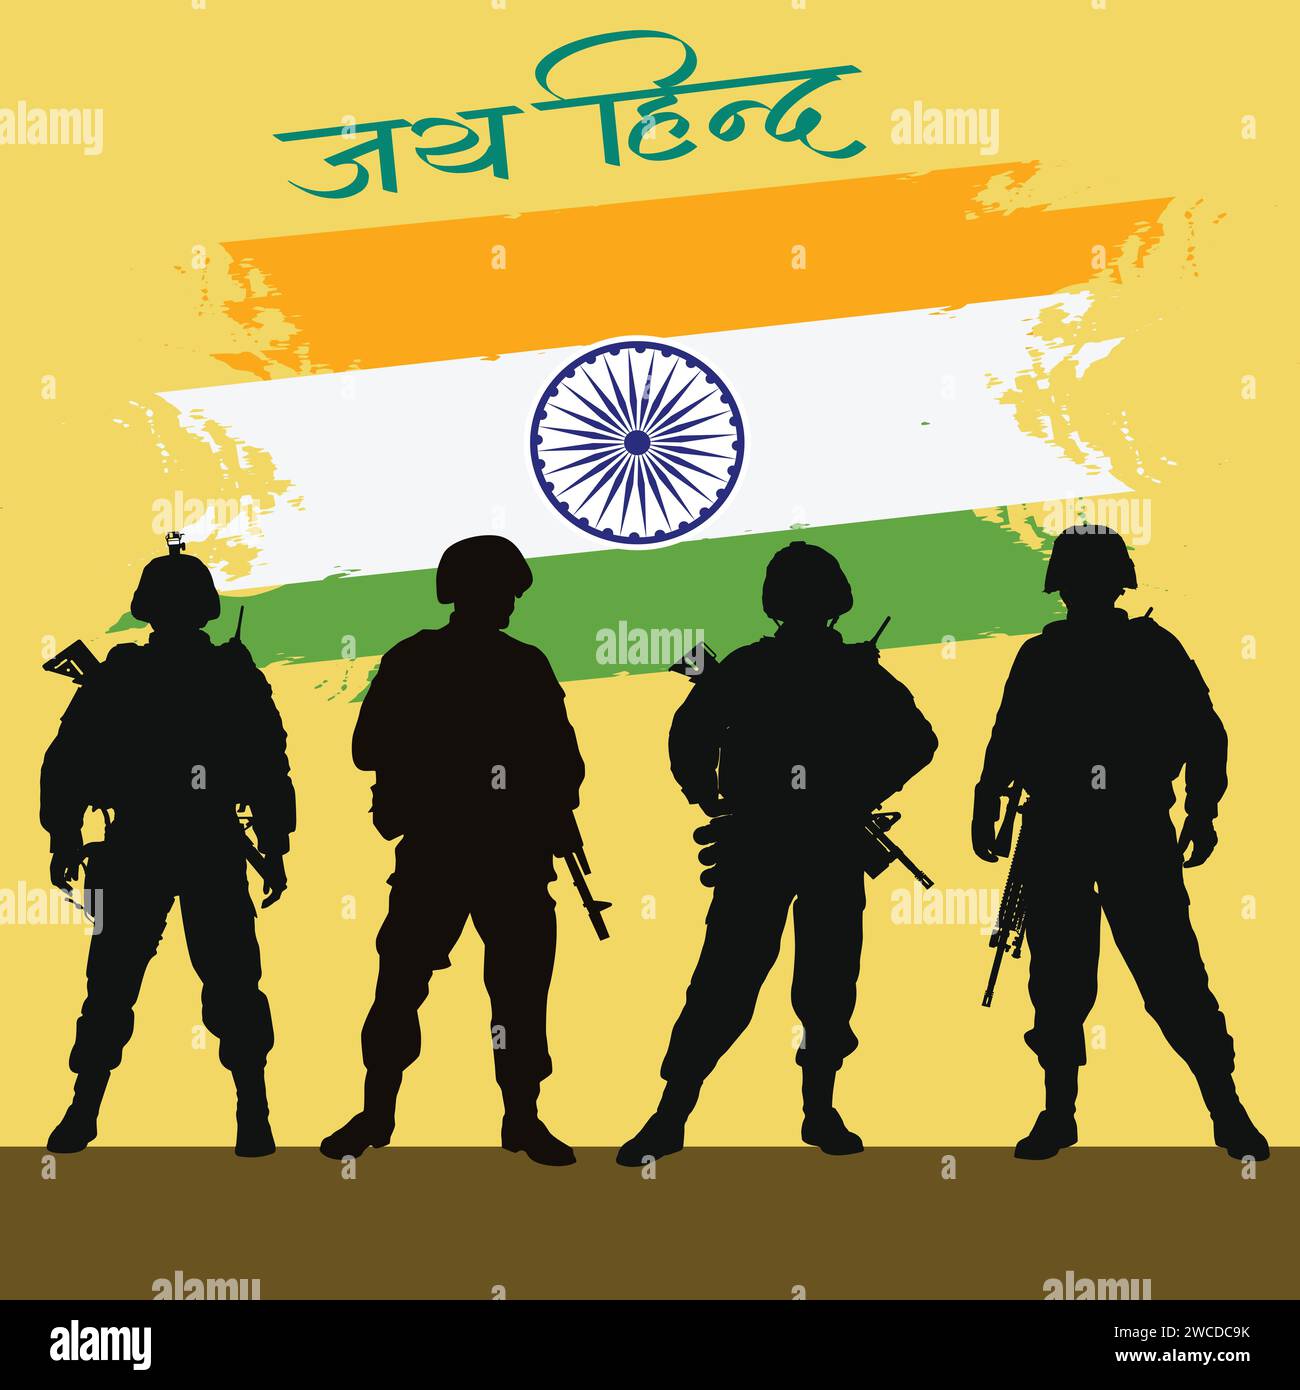 Vektor-Illustration der indischen Armee mit Flagge für Happy Republic Day von Indien, Unabhängigkeit, Indien Stock Vektor